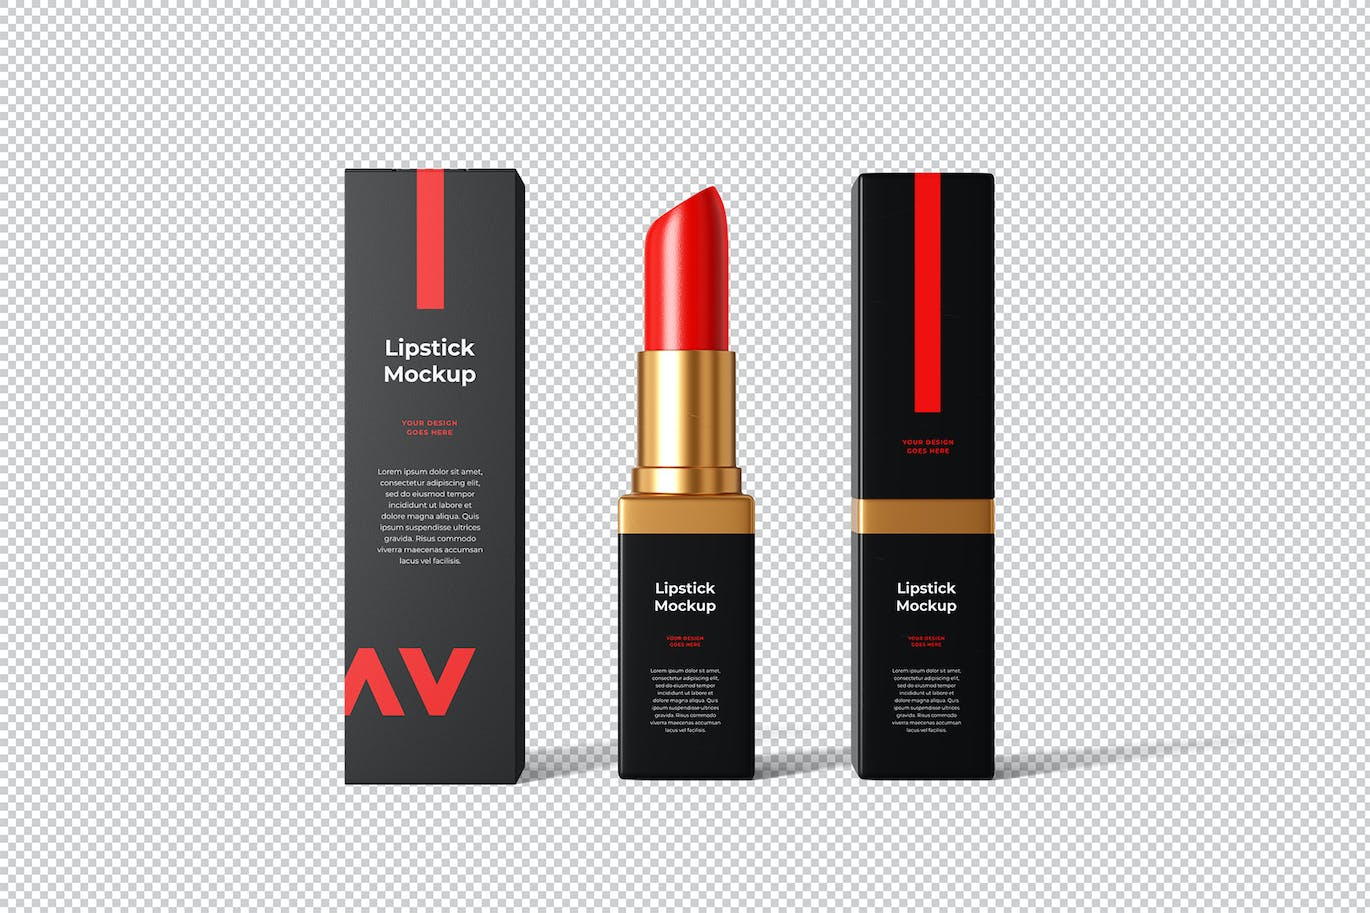 化妆品口红品牌包装设计样机 Lipstick Mockup 样机素材 第4张